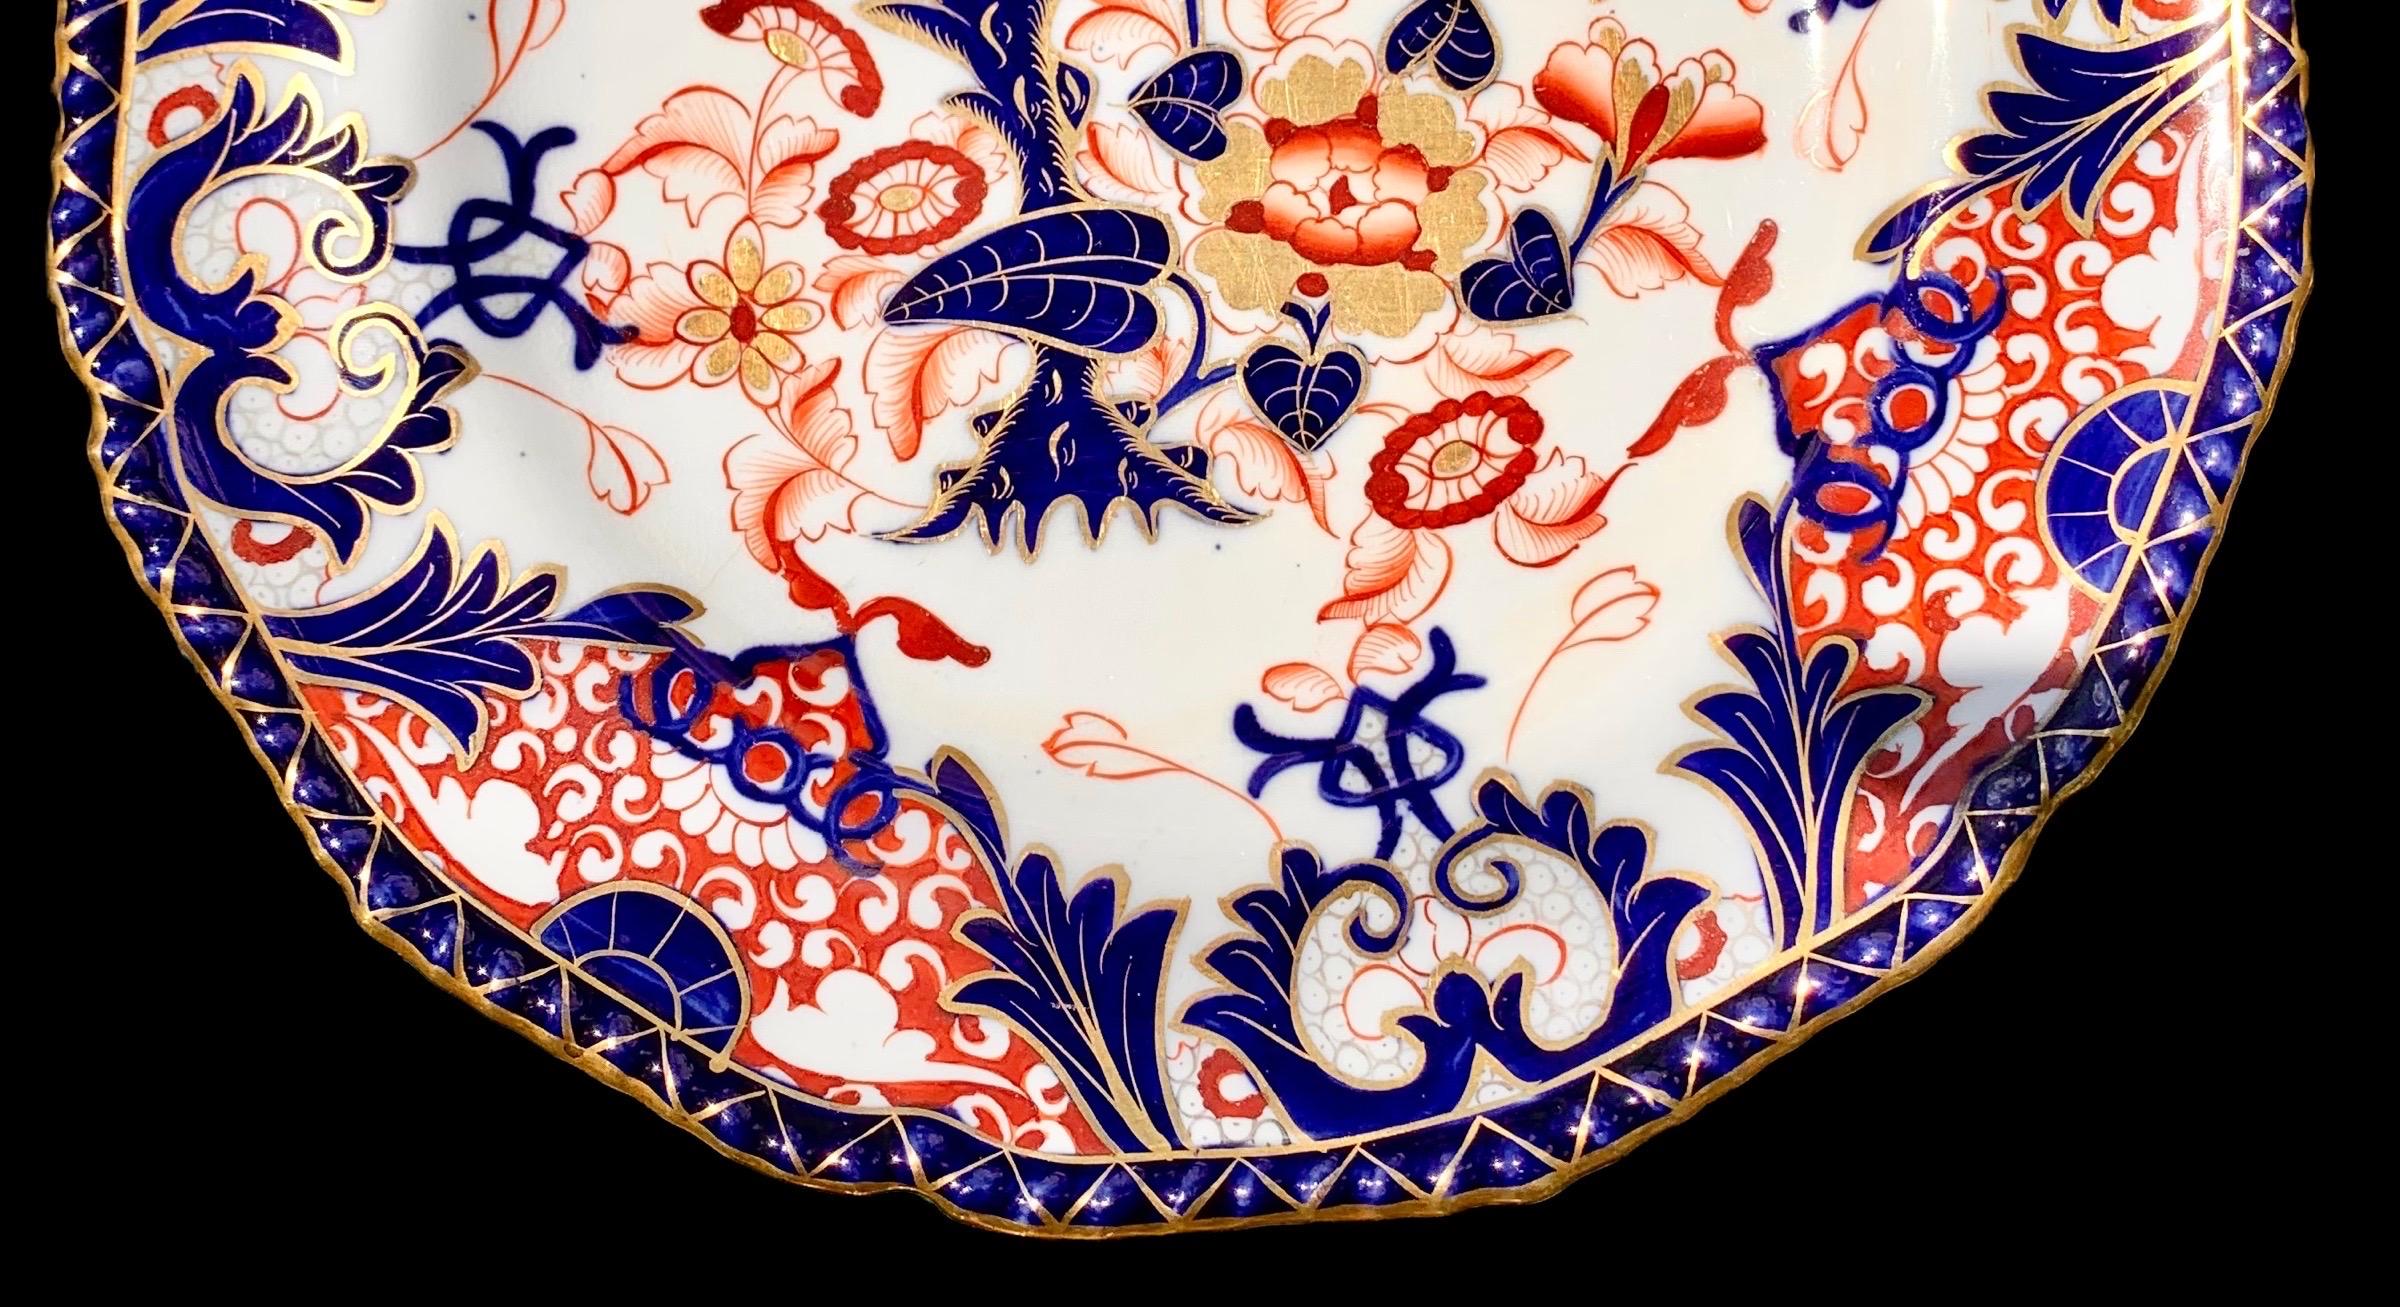 Un ensemble de six assiettes Mason's en pierre de fer Imari, début du 19e siècle, avec de belles assiettes à dîner festonnées, gaufrées et décorées de dorures dans les couleurs typiques d'Imari, rouge, orange, cobalt et blanc, avec une décoration de